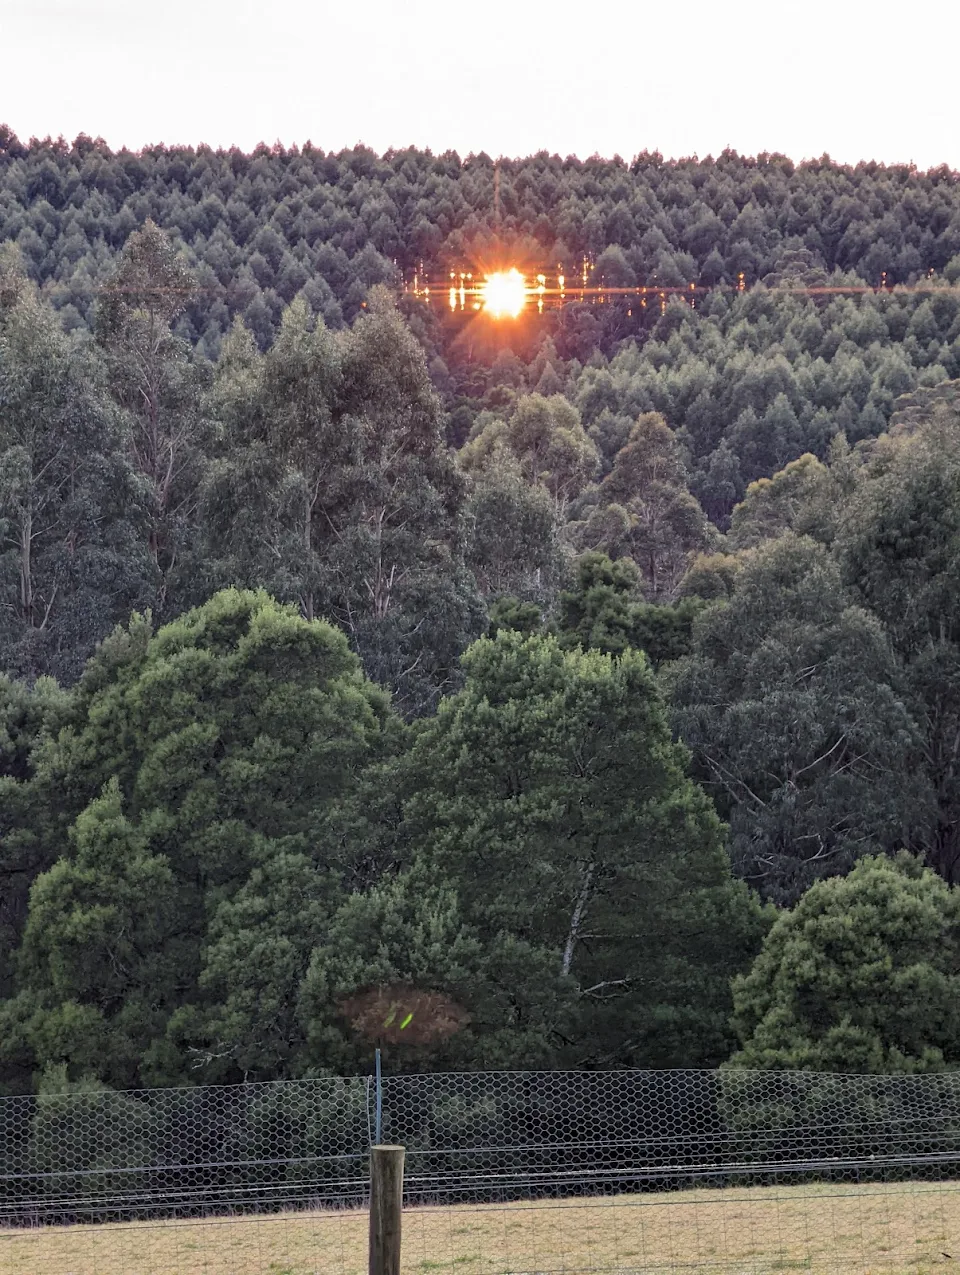 Sunrise this morning looked a bit creepy. Tasmania, Australia.